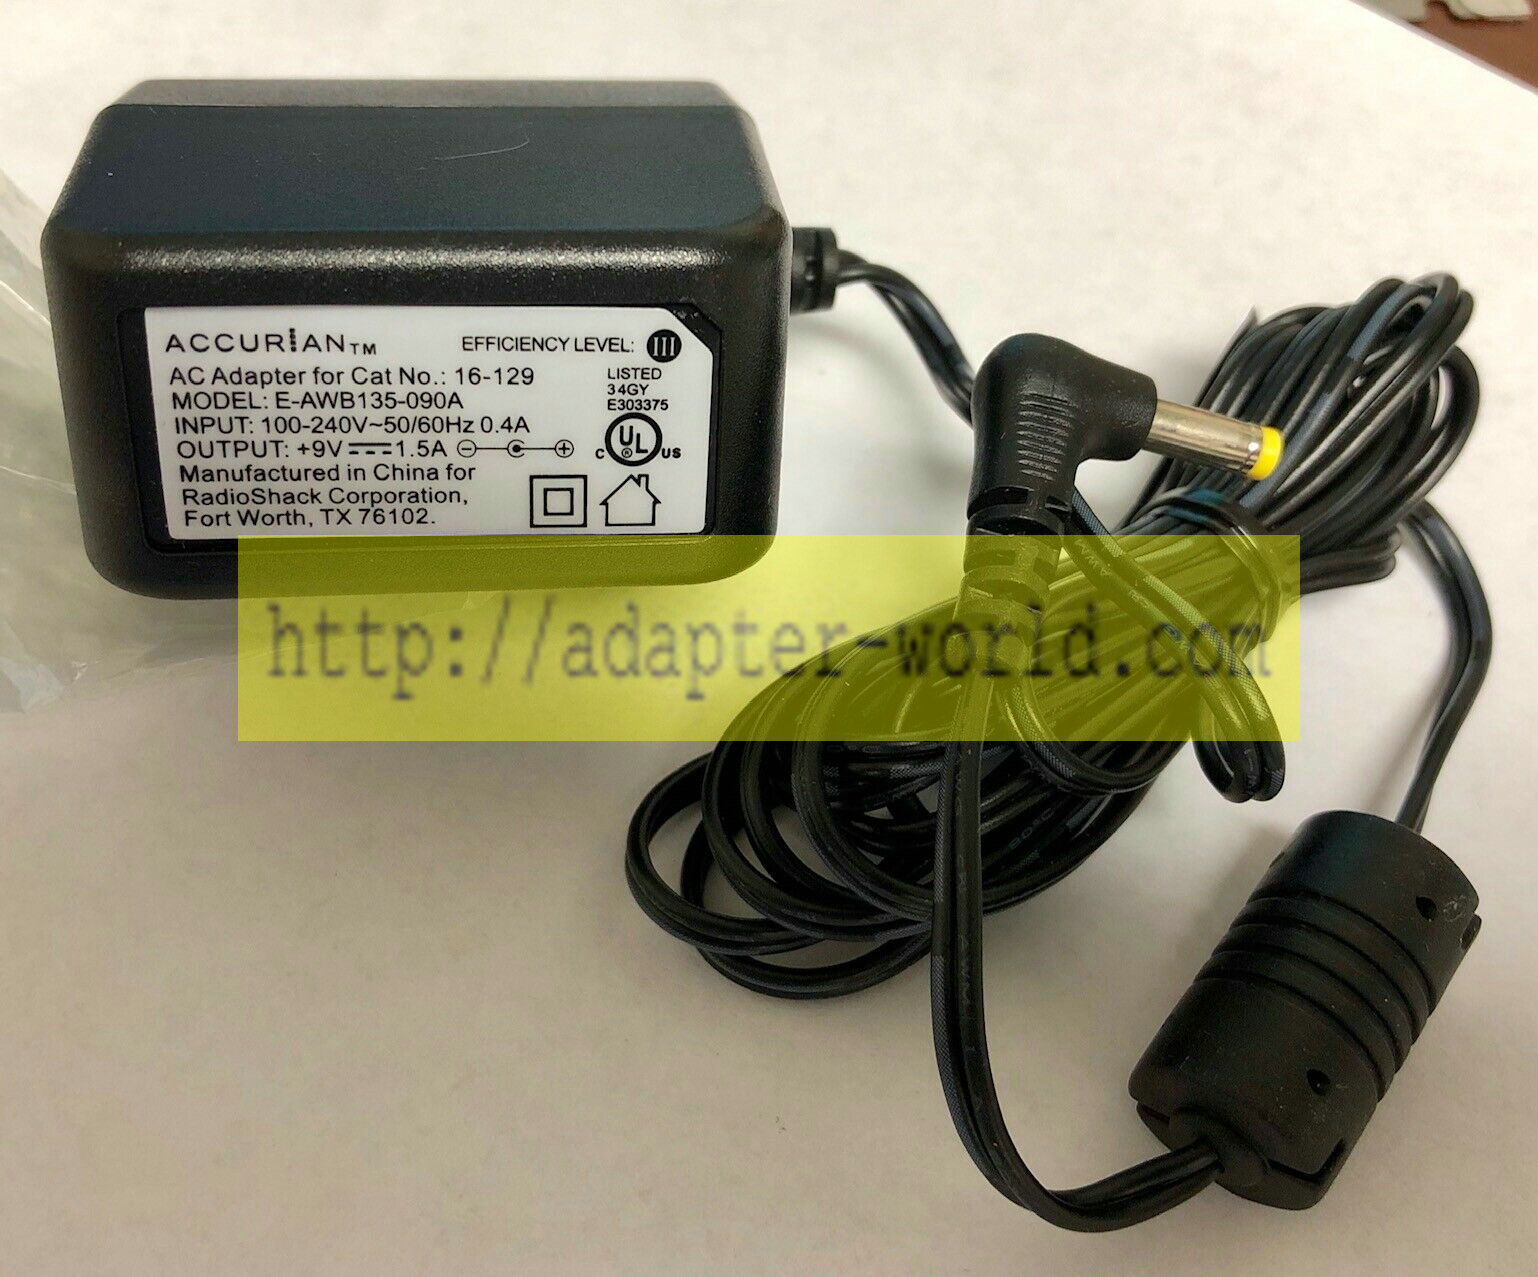 *Brand NEW*9V 1.5A AC DC Adapter Accurian E-AWB135-090A 16-129 POWER SUPPLY - Click Image to Close